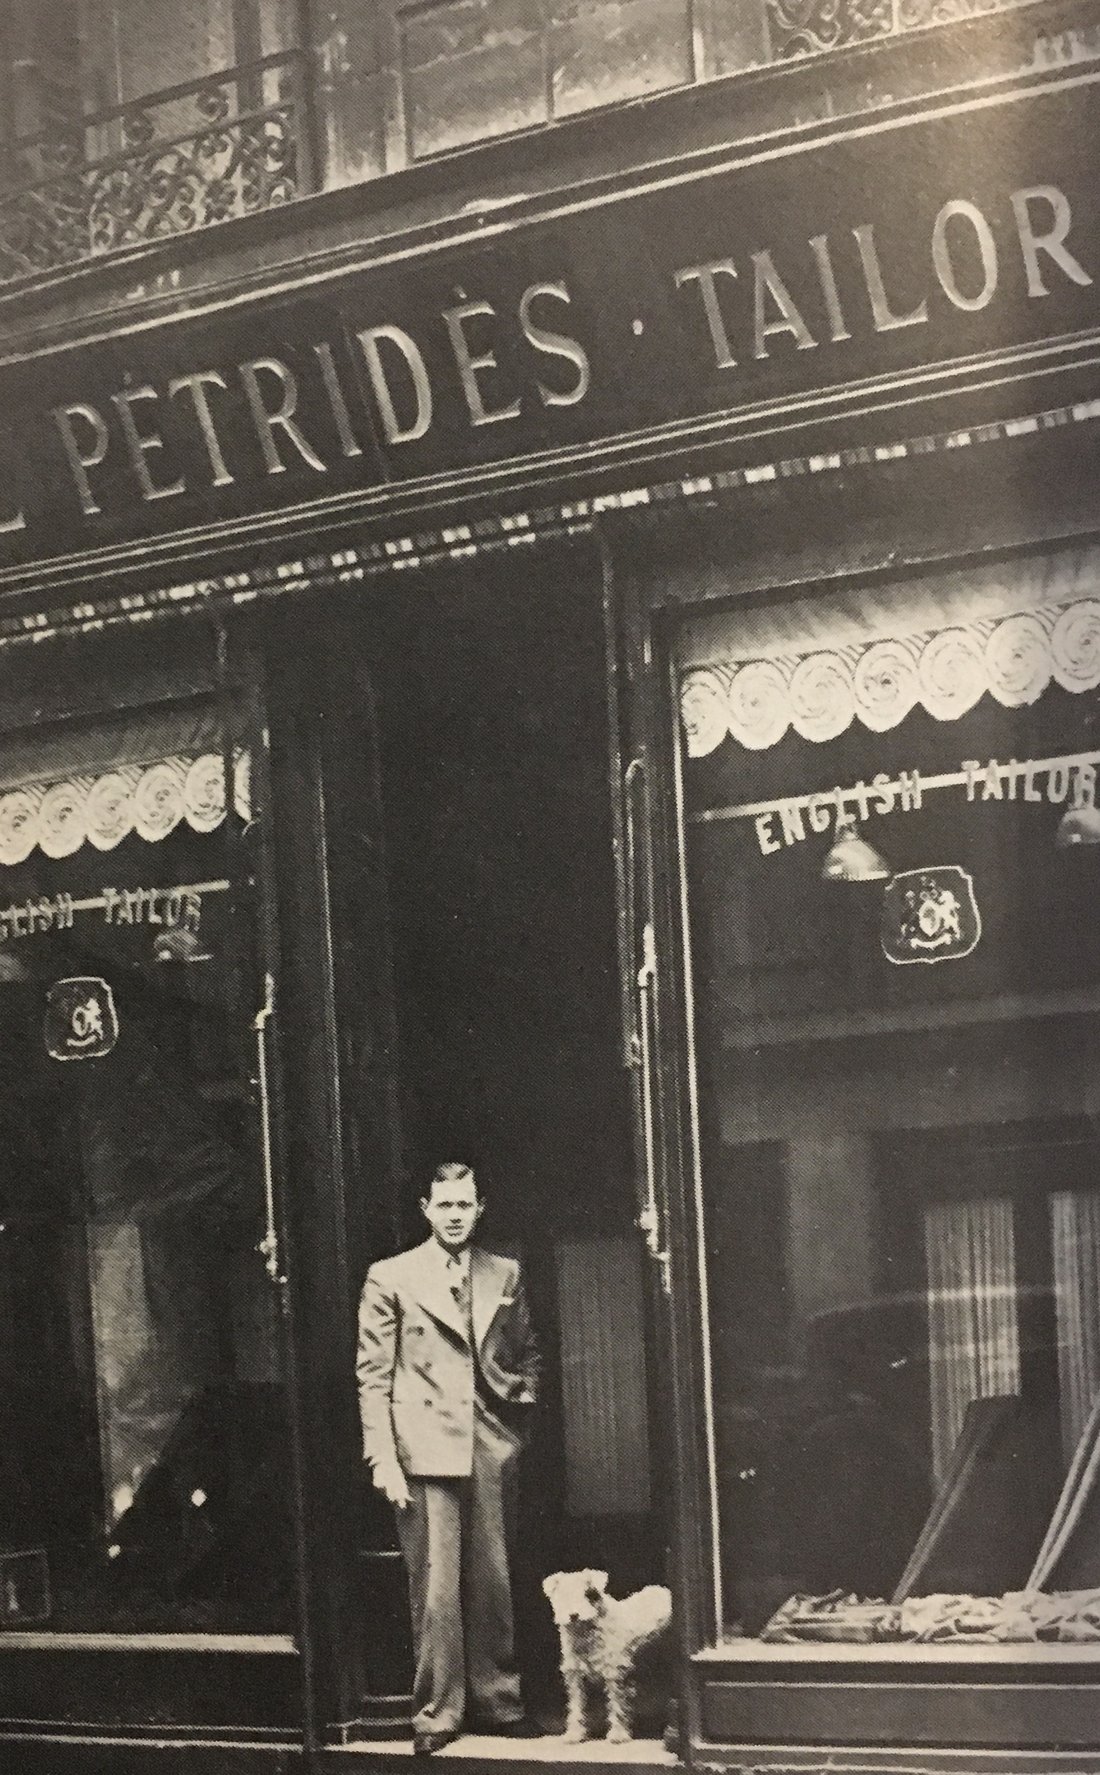 Paul Pétridès devant l'entrée de son magasin de la rue Rougemont, photographie non datée. Source : Paul Pétridès, Ma chance et ma réussite, Paris, Plon, 1978.